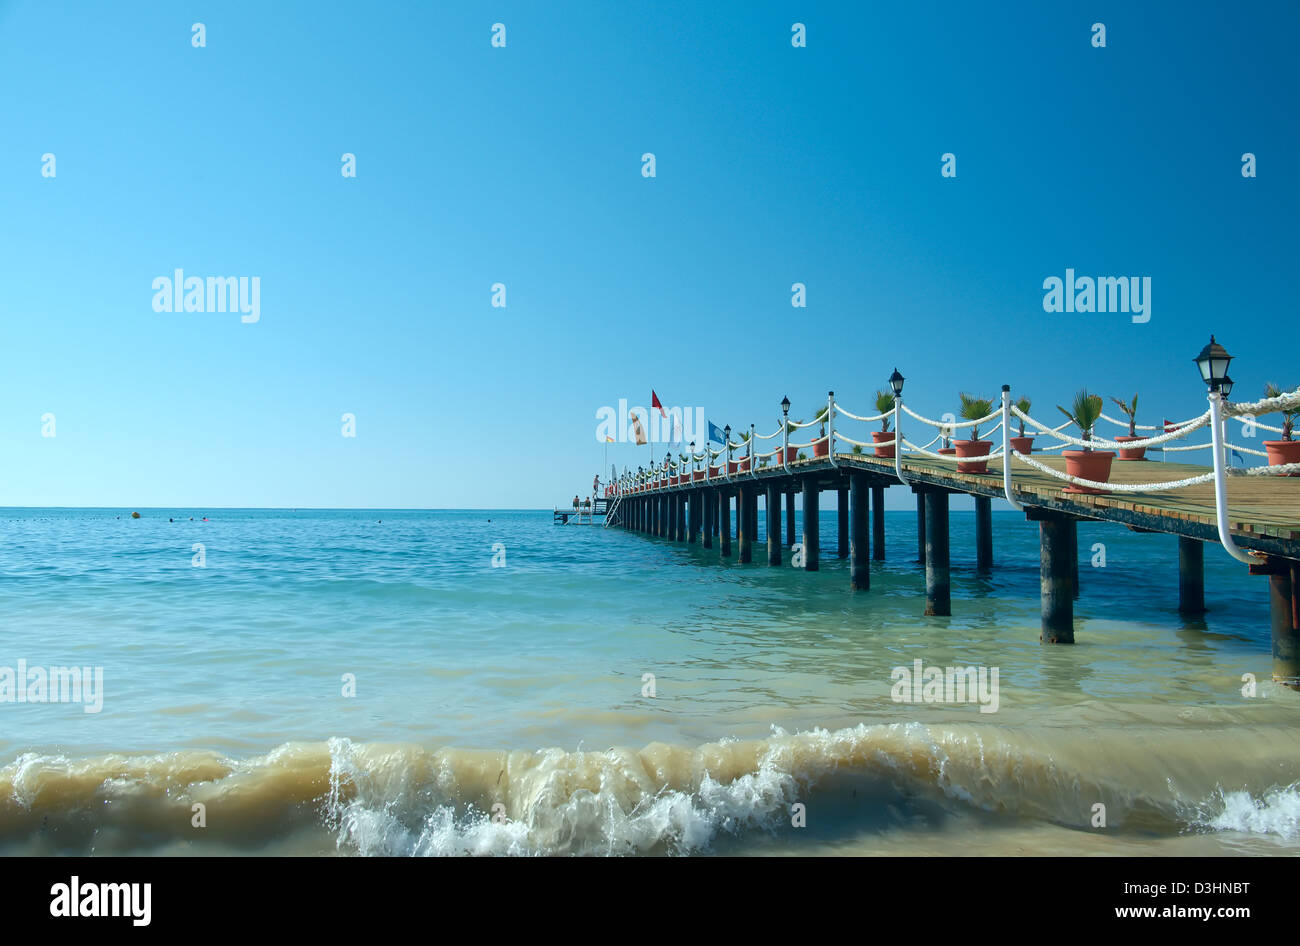 Pier beach hotel. Mediterranean. Turkey Stock Photo